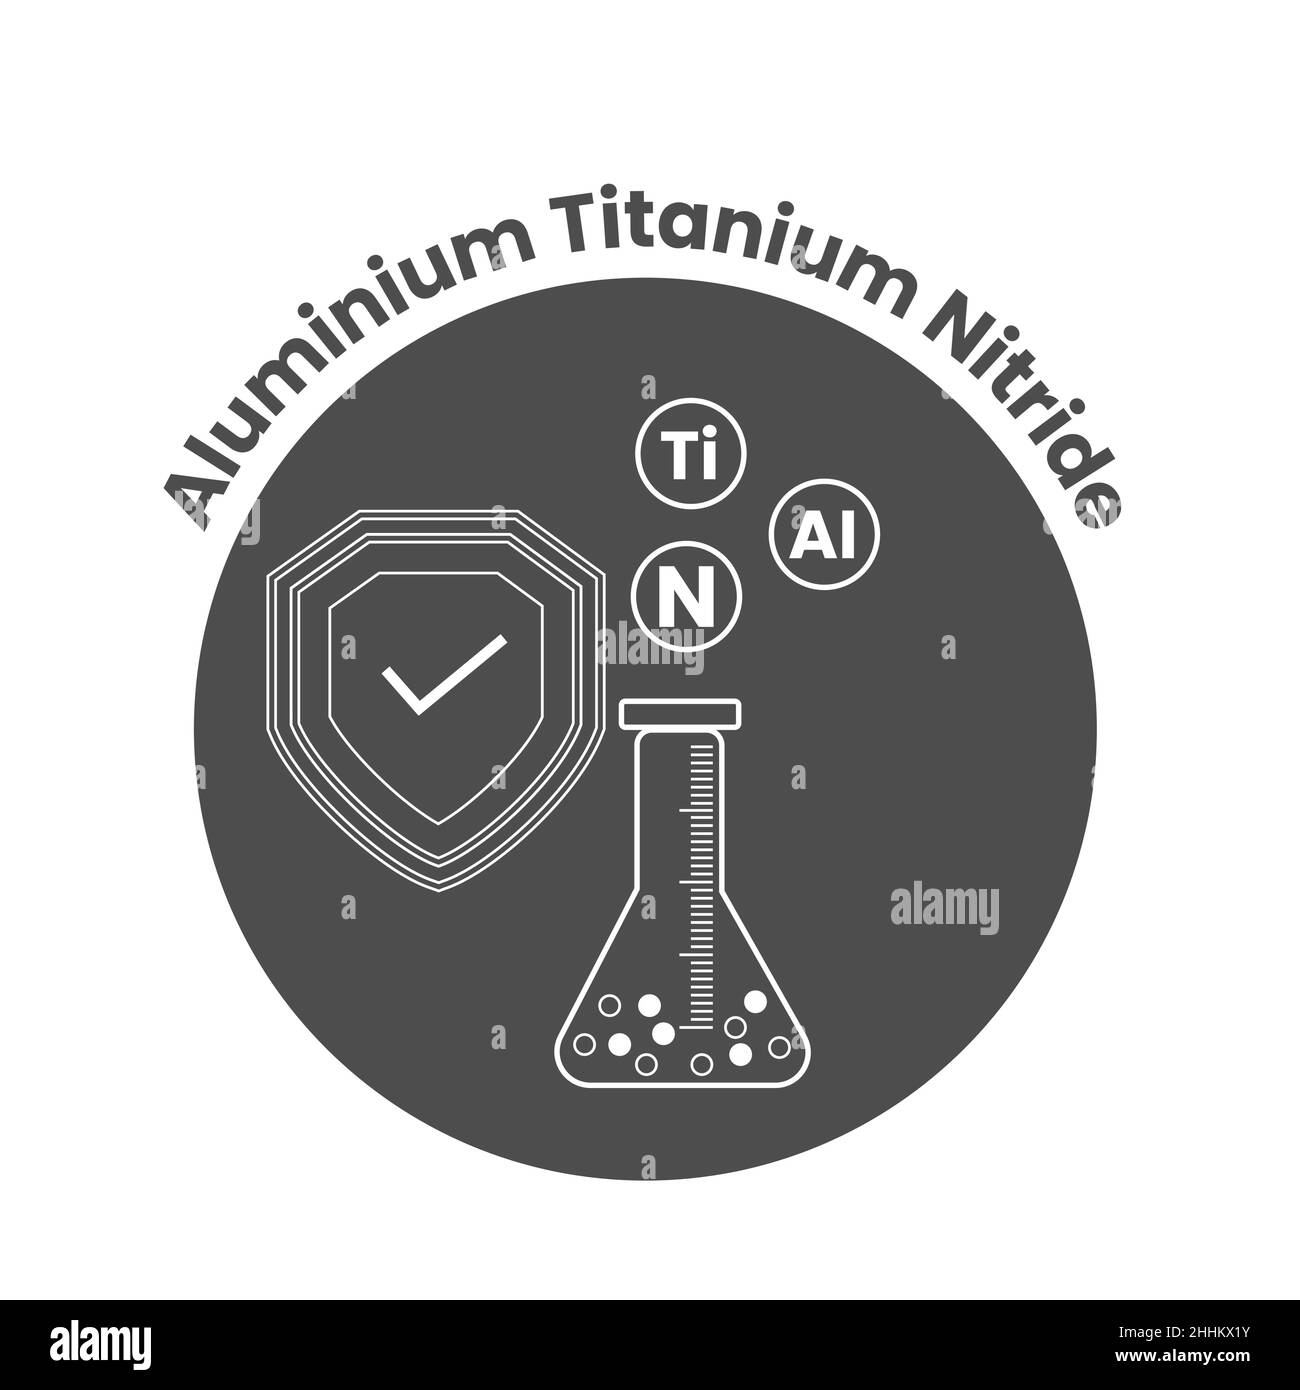 Aluminum Titanium Nitride (AlTiN) vector logo Stock Vector